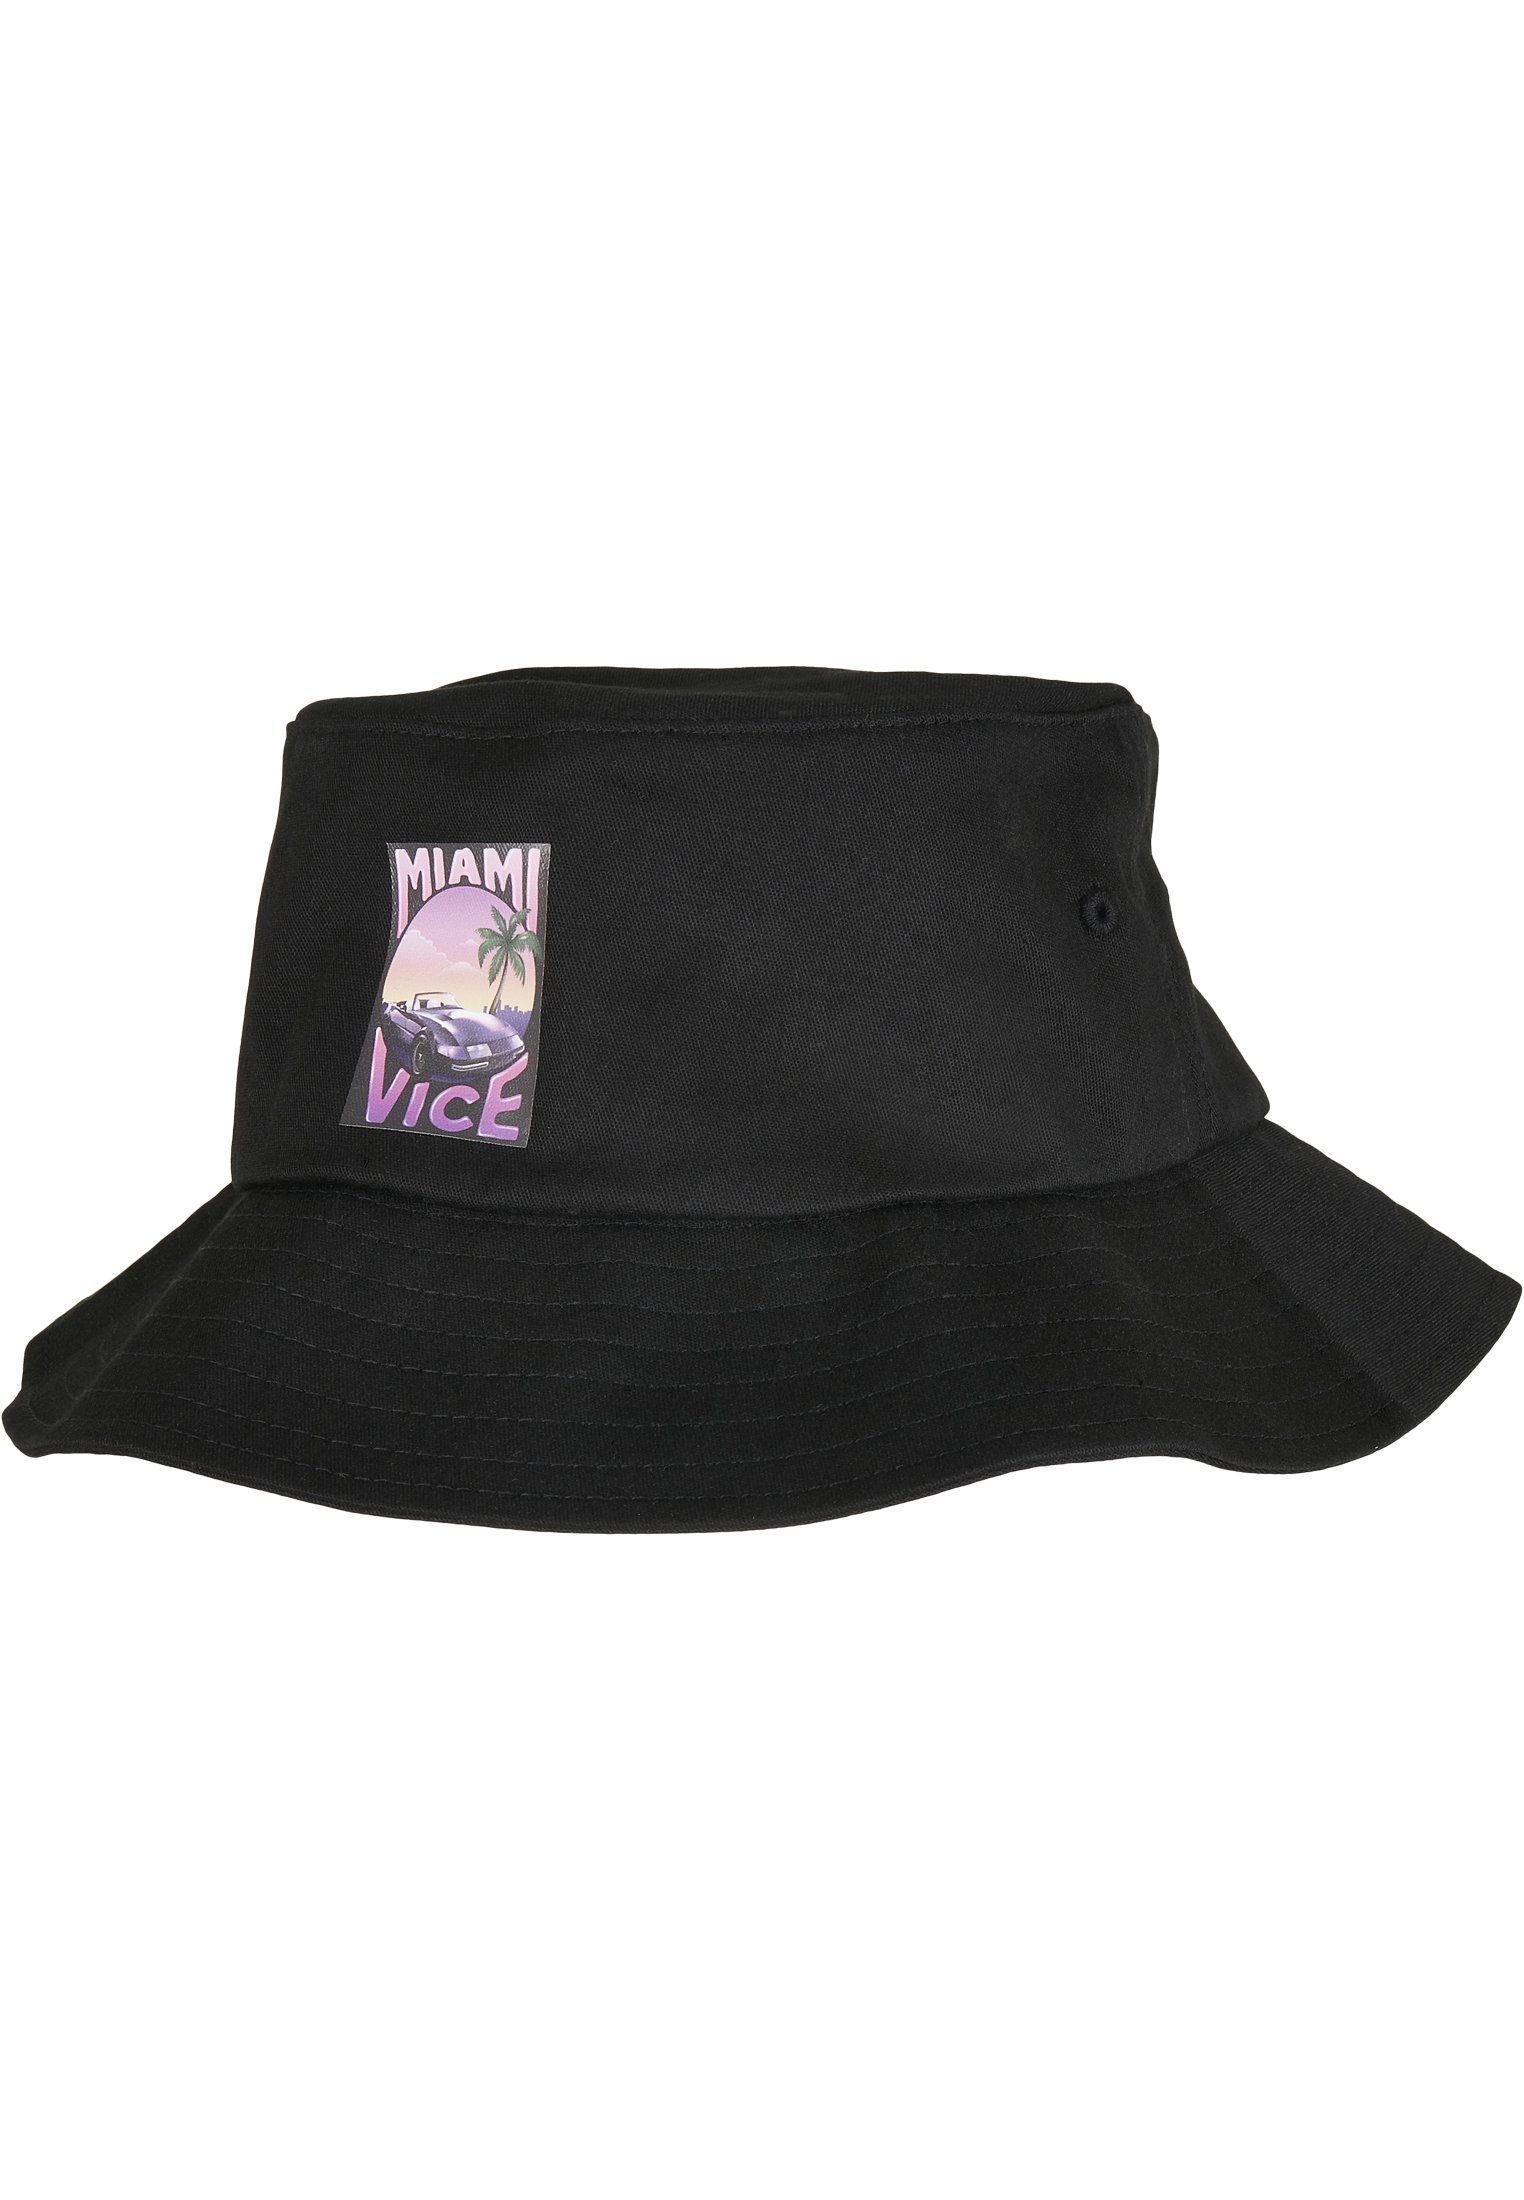 Bucket Print Hat Hat Merchcode Vice Bucket Miami Flex Cap